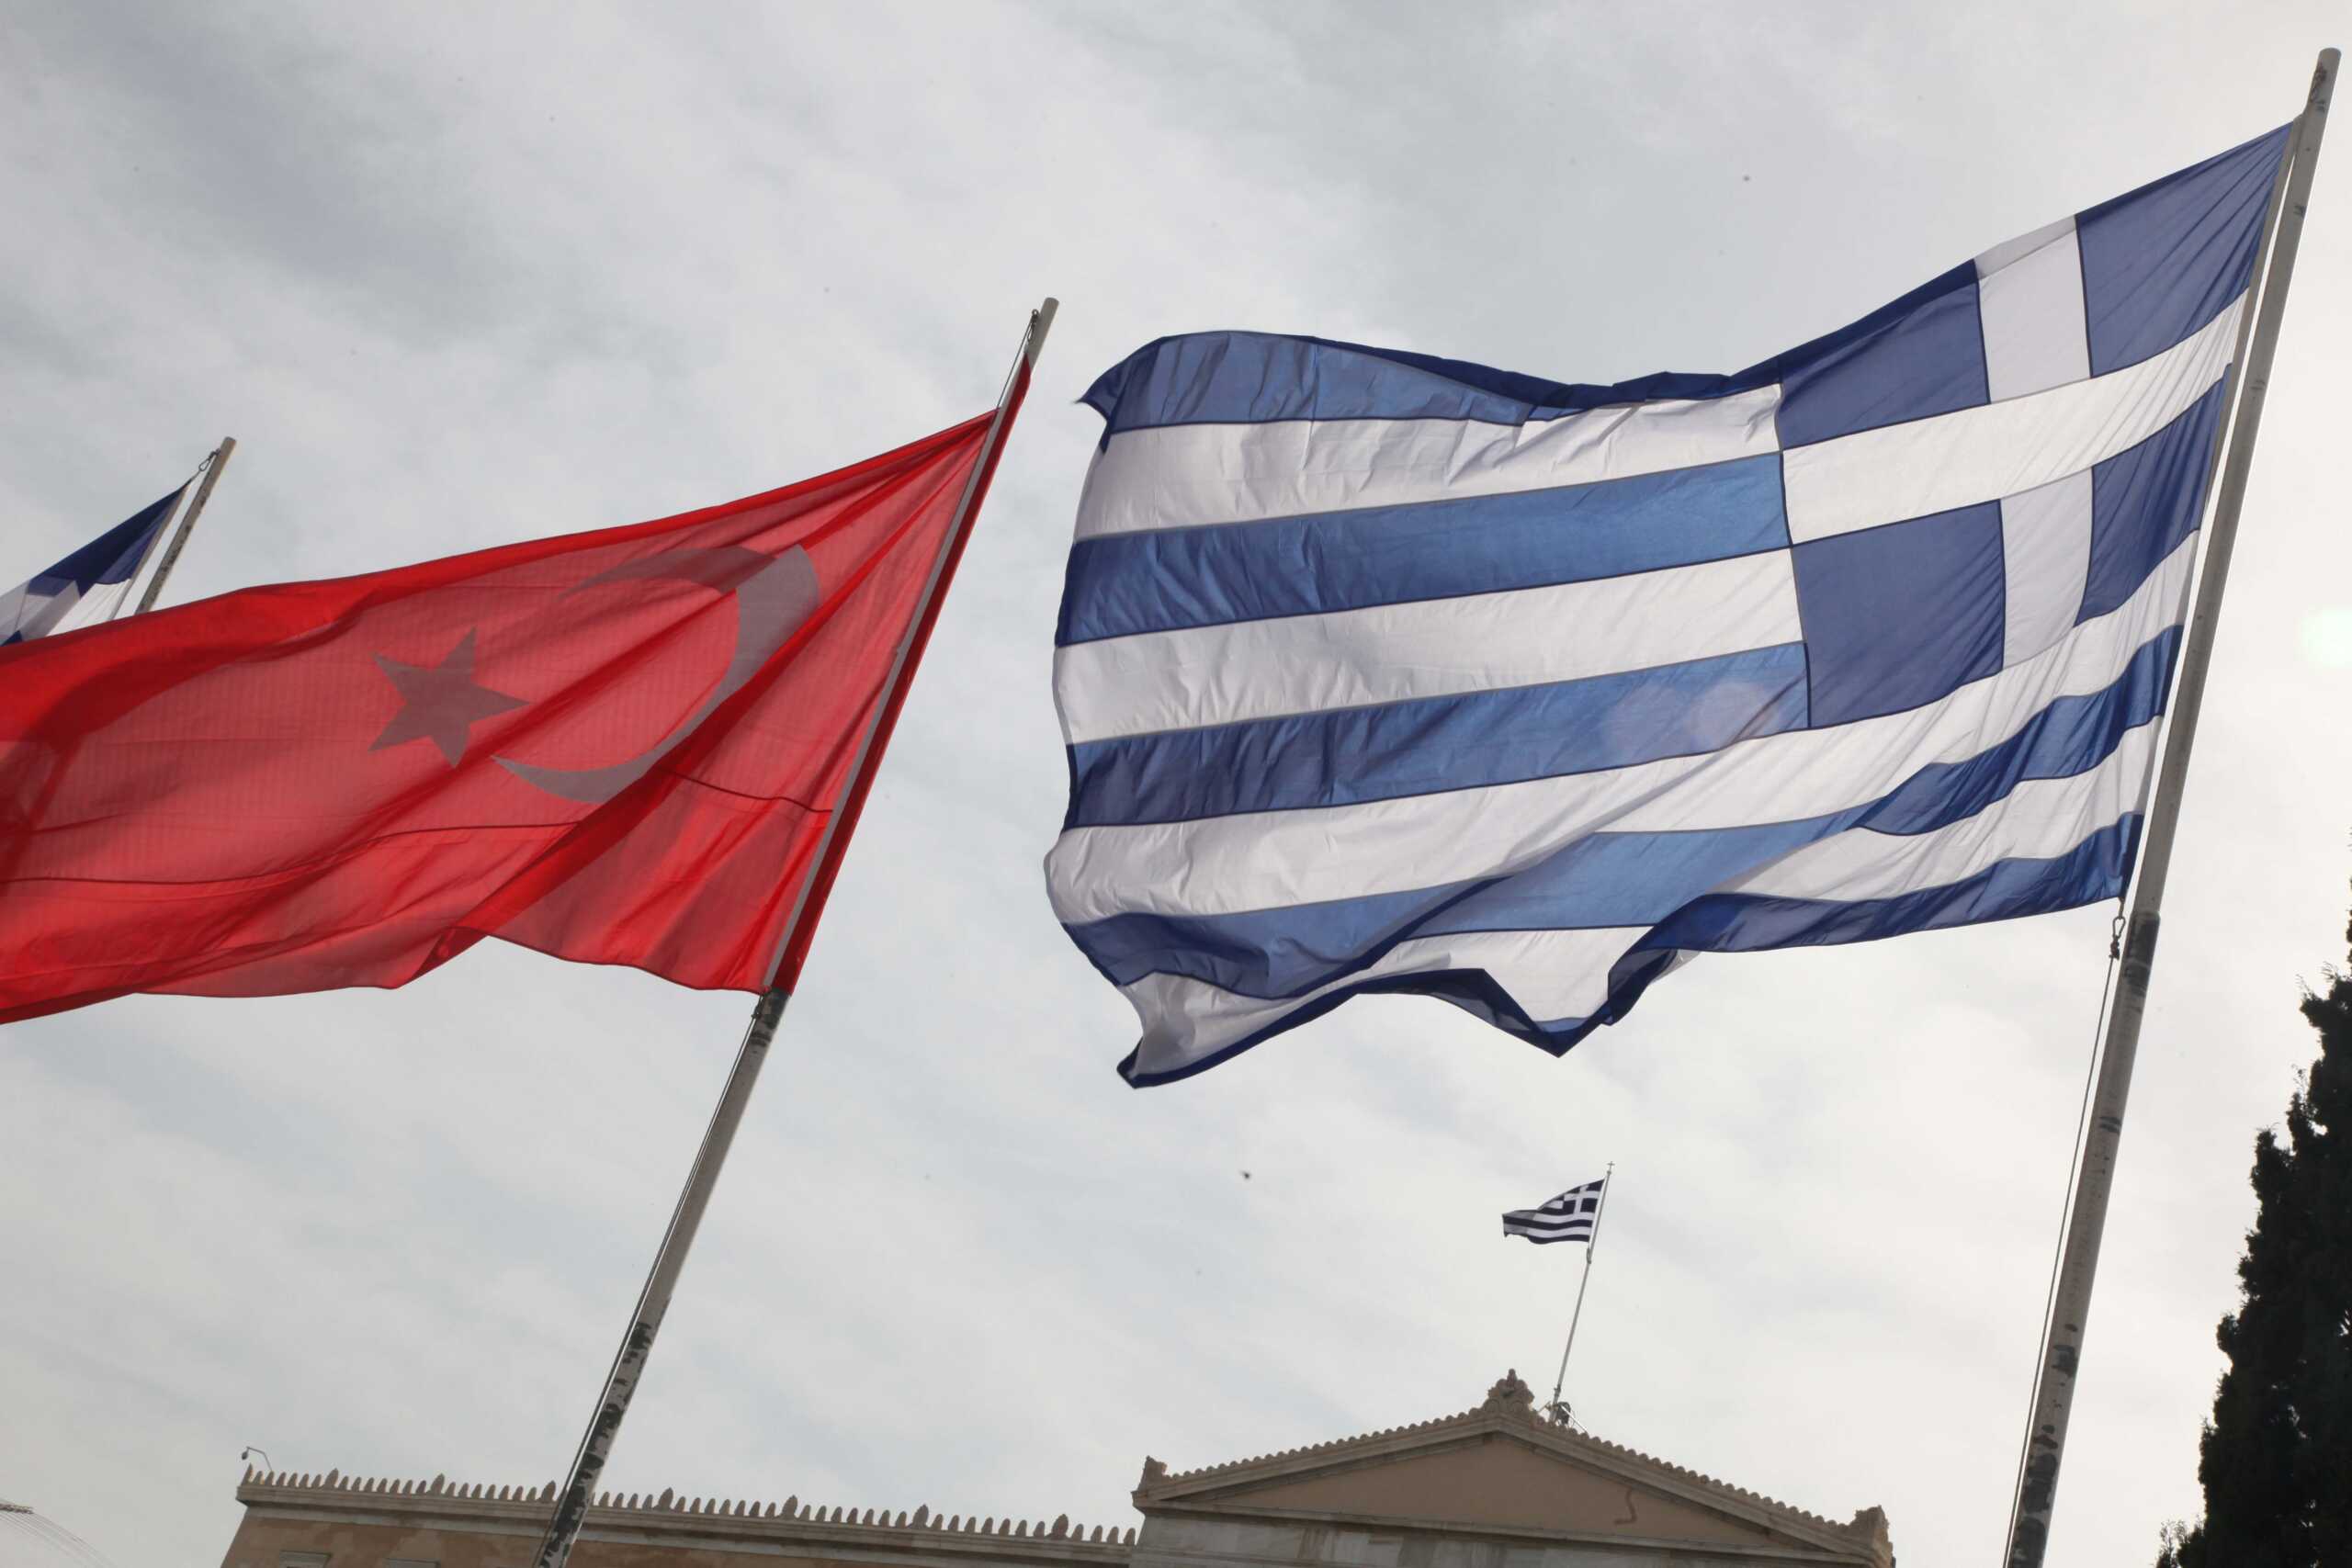 Πολιτικός διάλογος Ελλάδας, Τουρκίας: «Να αξιοποιηθεί η υπάρχουσα θετική ατμόσφαιρα» λέει η κοινή δήλωση